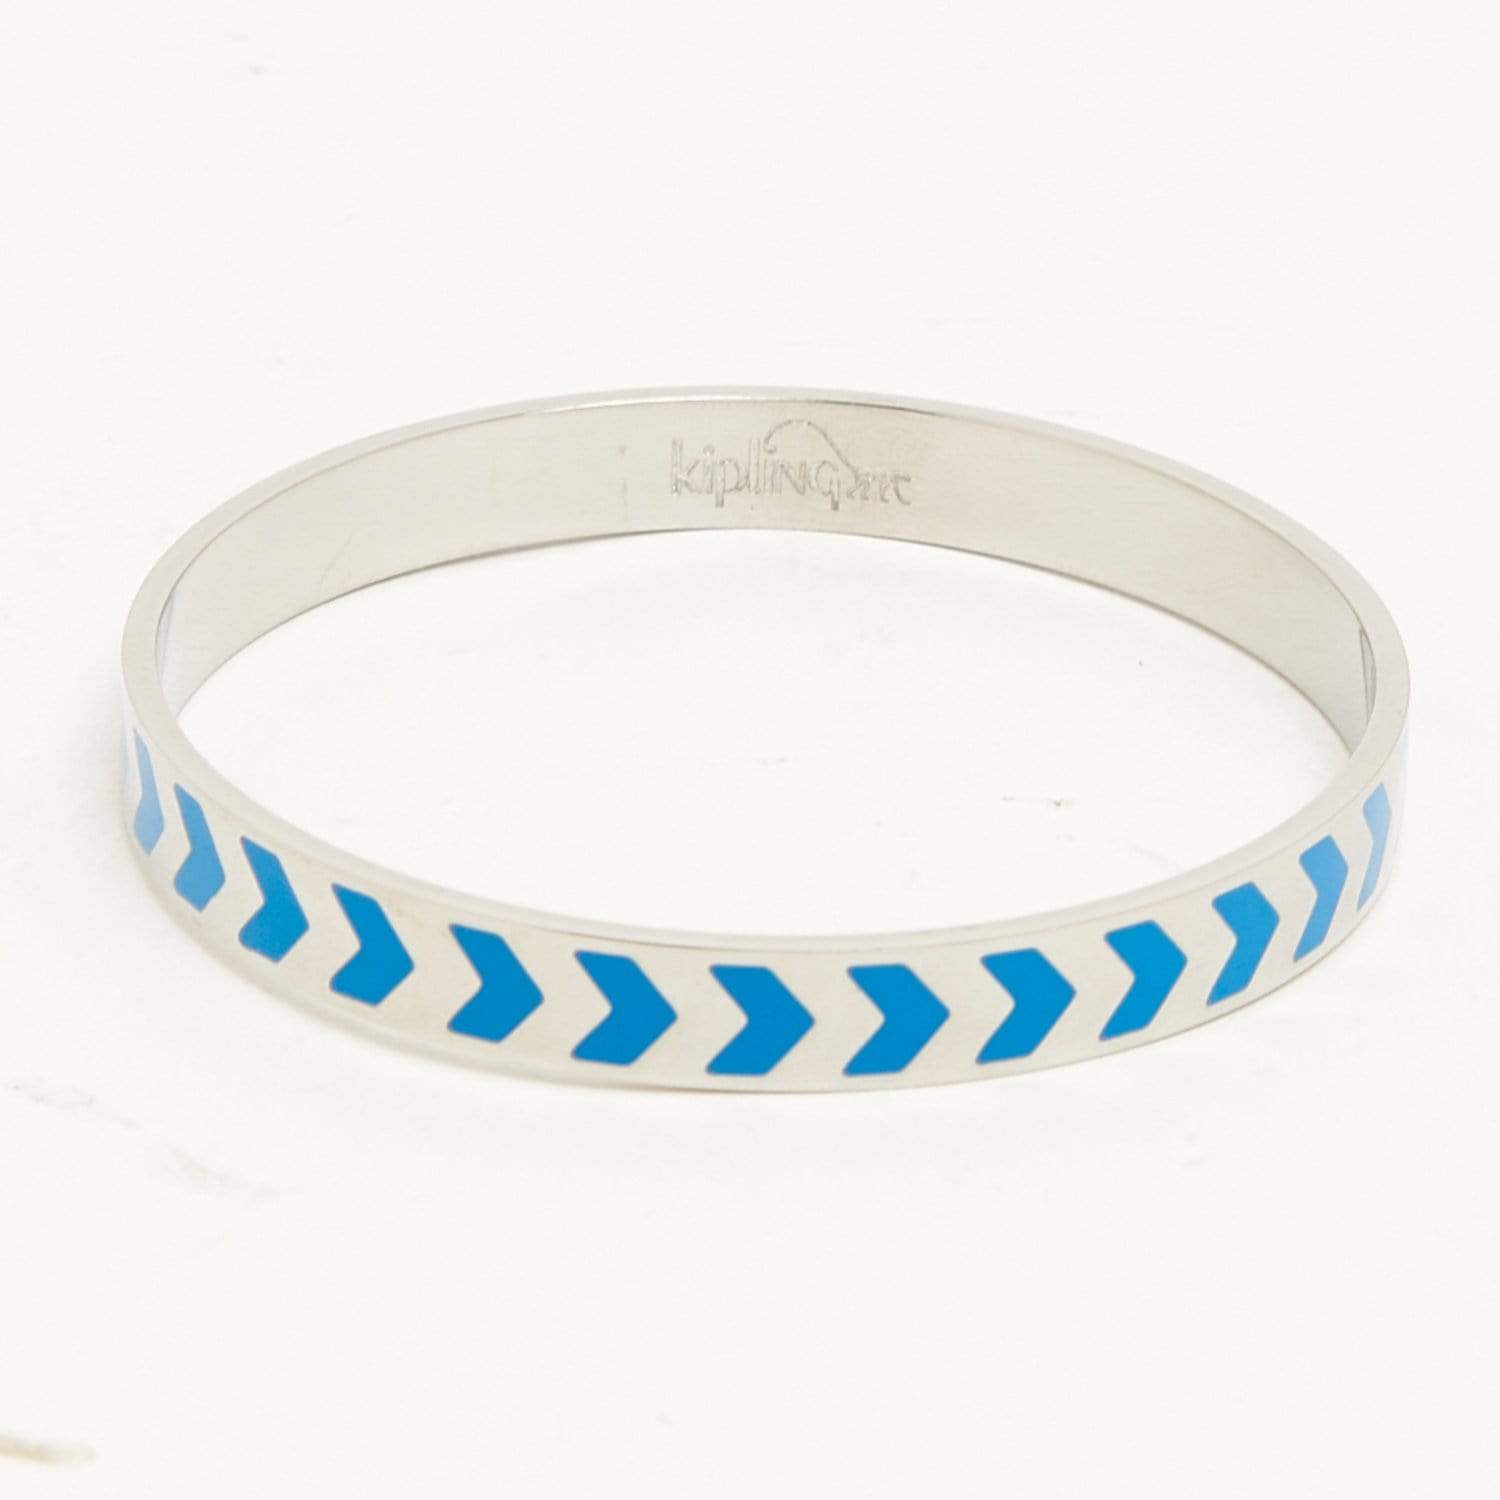 Kipling Enamel Chevron Stainless steel bracelet with engraved Kipling logo on the interior - Agua Blue - 00907-53G